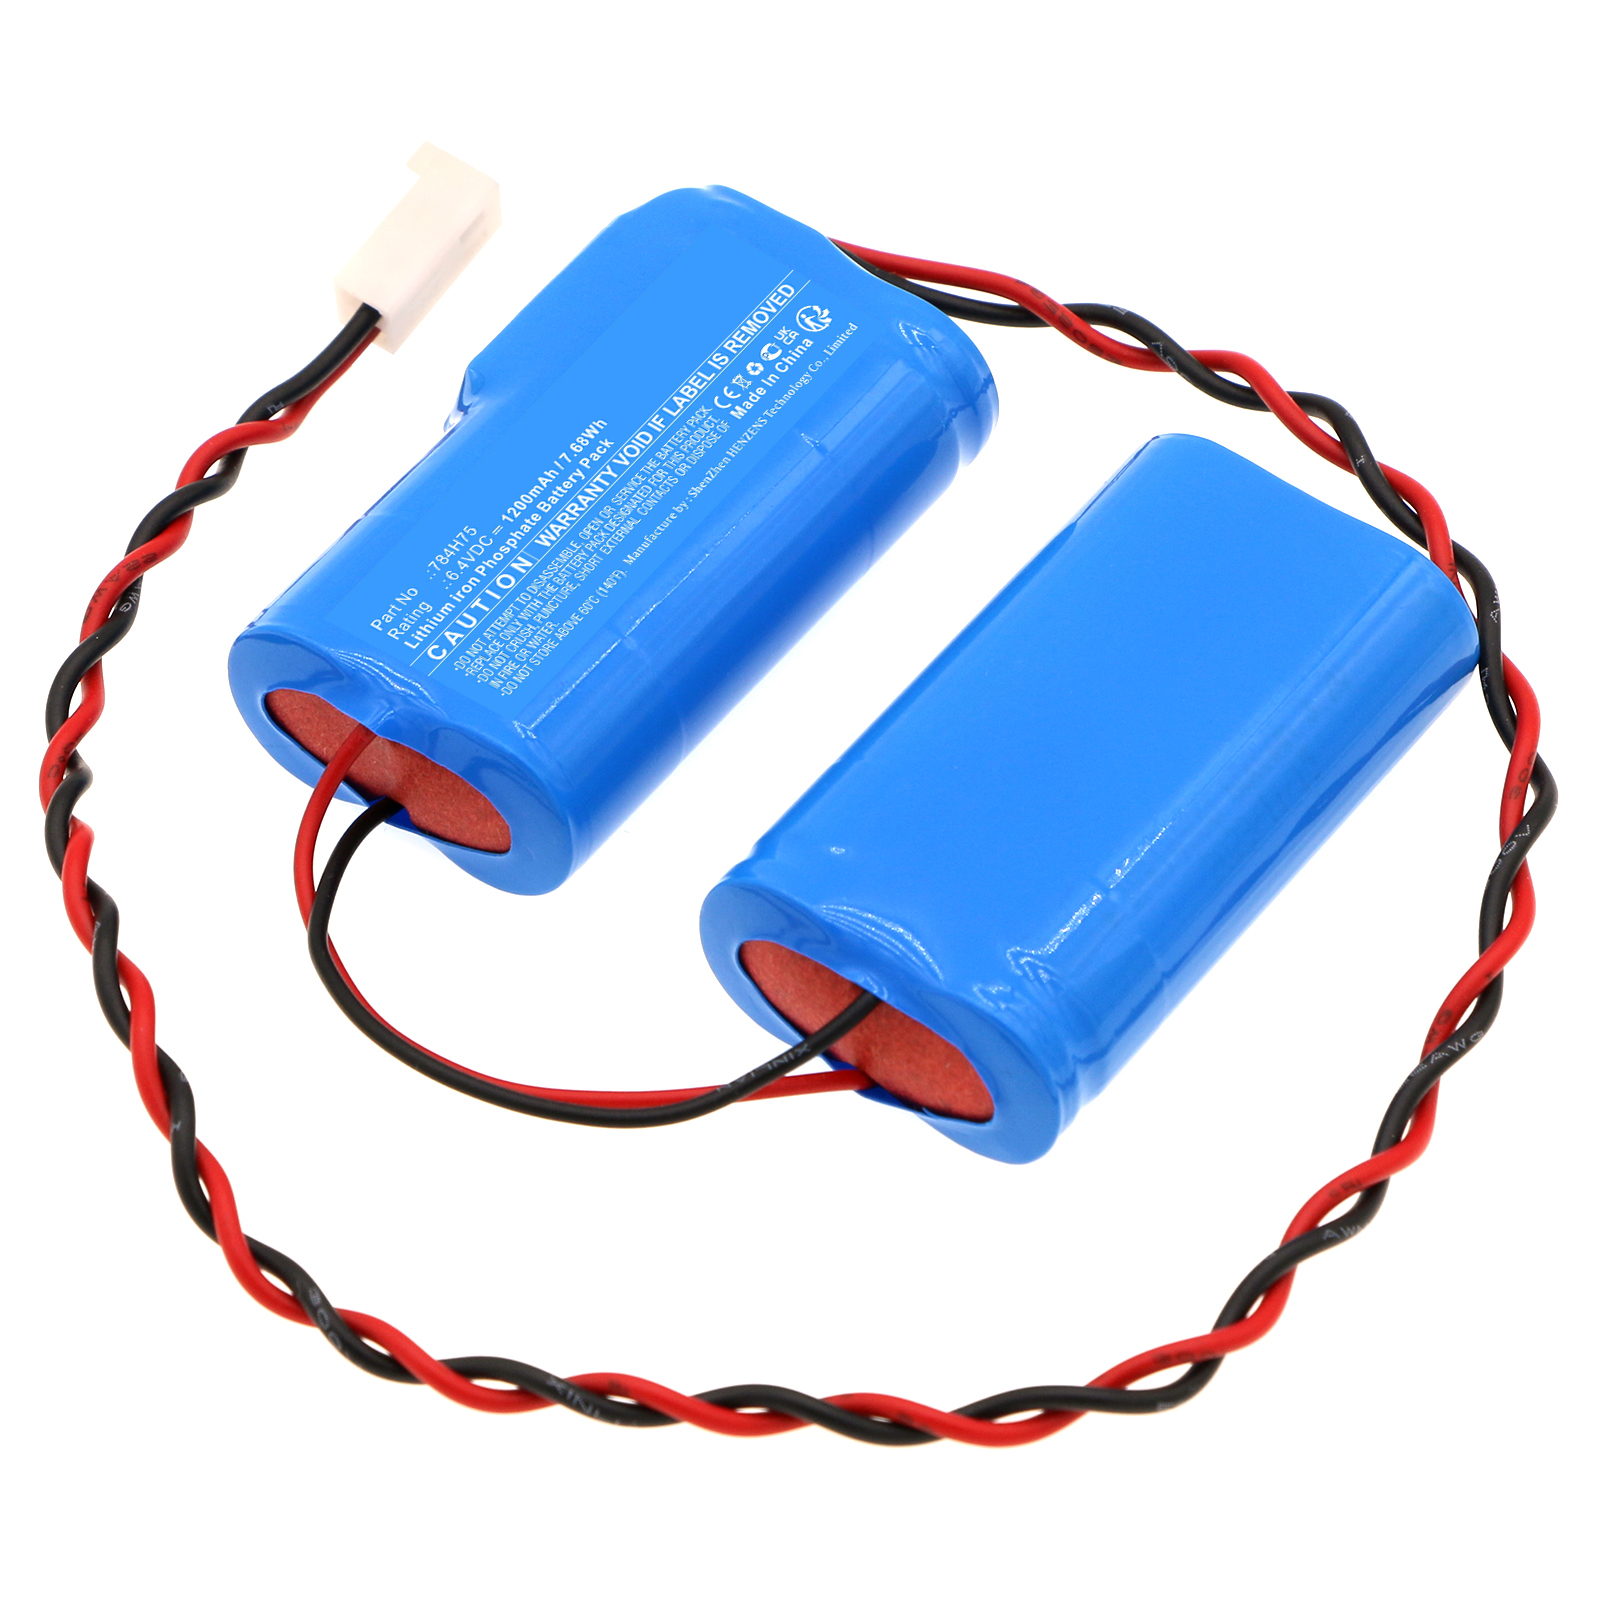 Synergy Digital Emergency Lighting Battery, Compatible with DUAL-LITE 784H75 Emergency Lighting Battery (LiFePO4, 6.4V, 1200mAh)